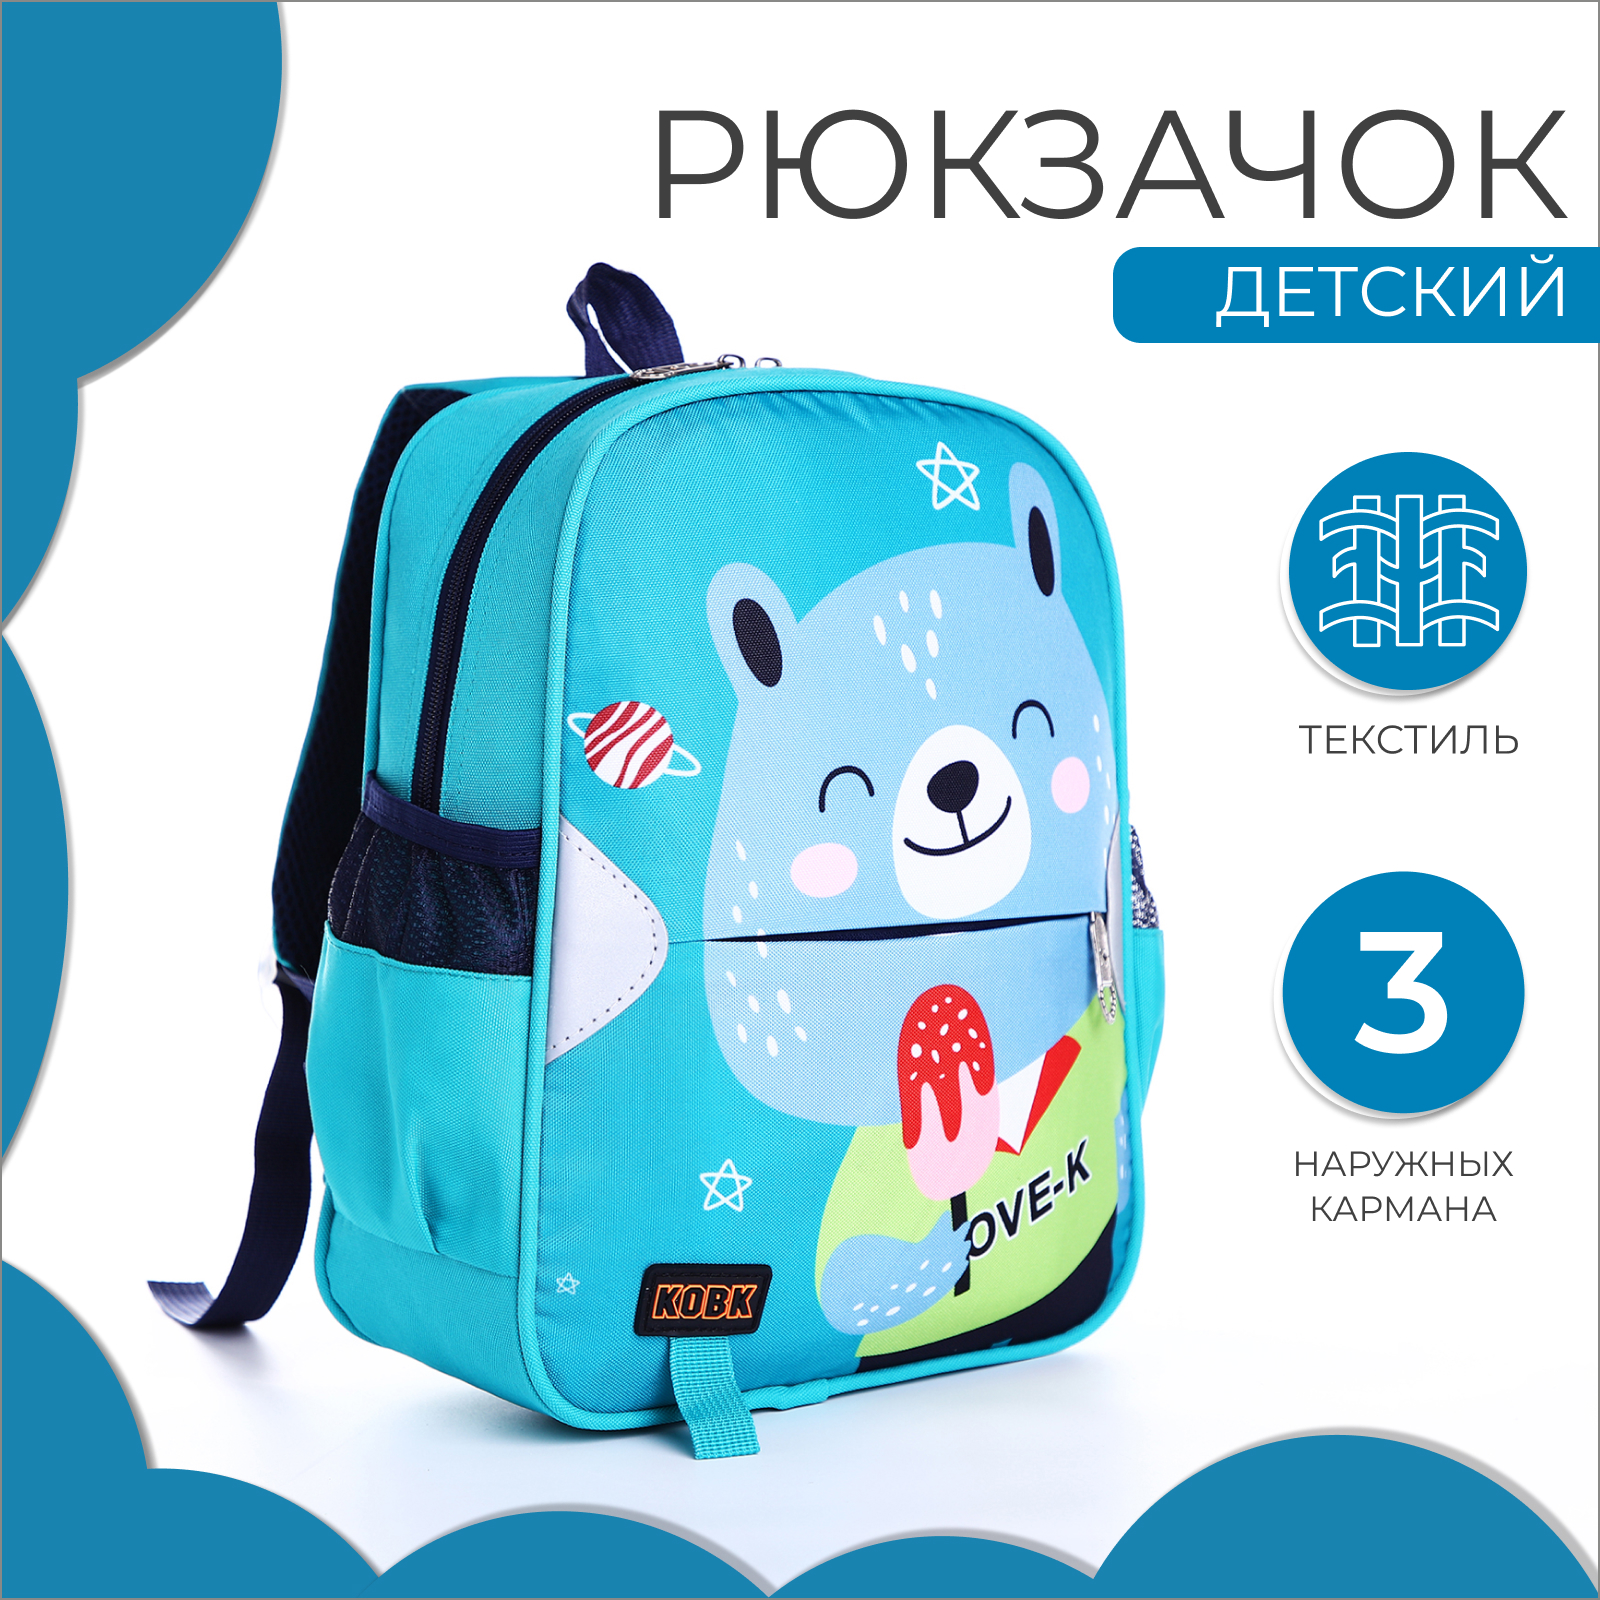 Рюкзак детский NAZAMOK на молнии 3 наружных кармана цвет бирюзовый - фото 2